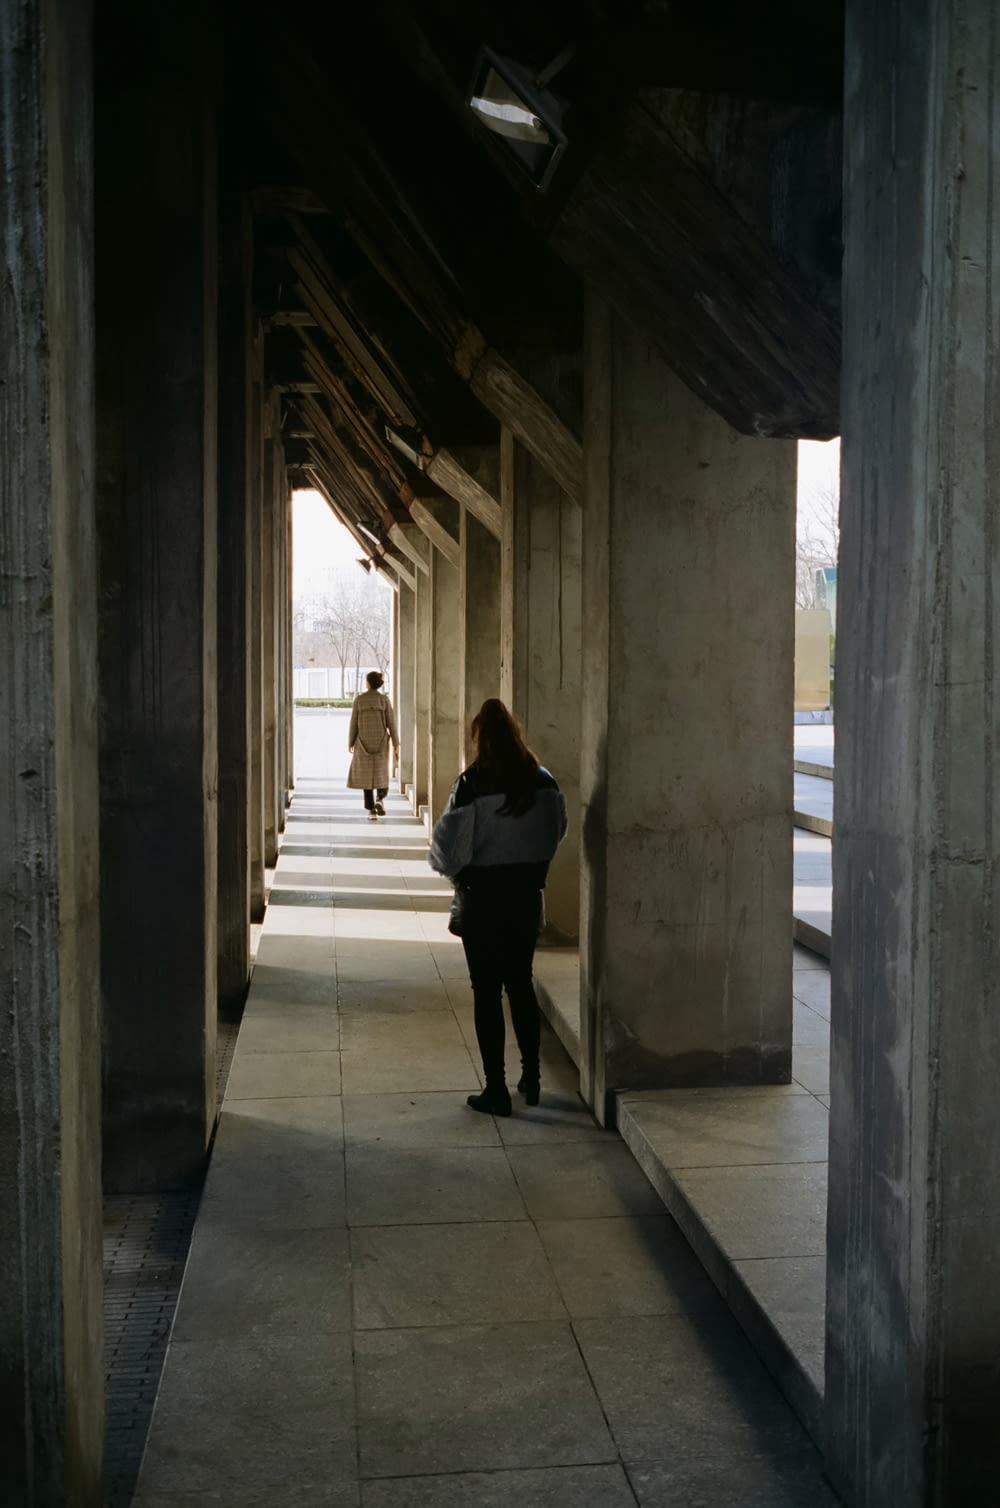 a woman is walking down a long hallway